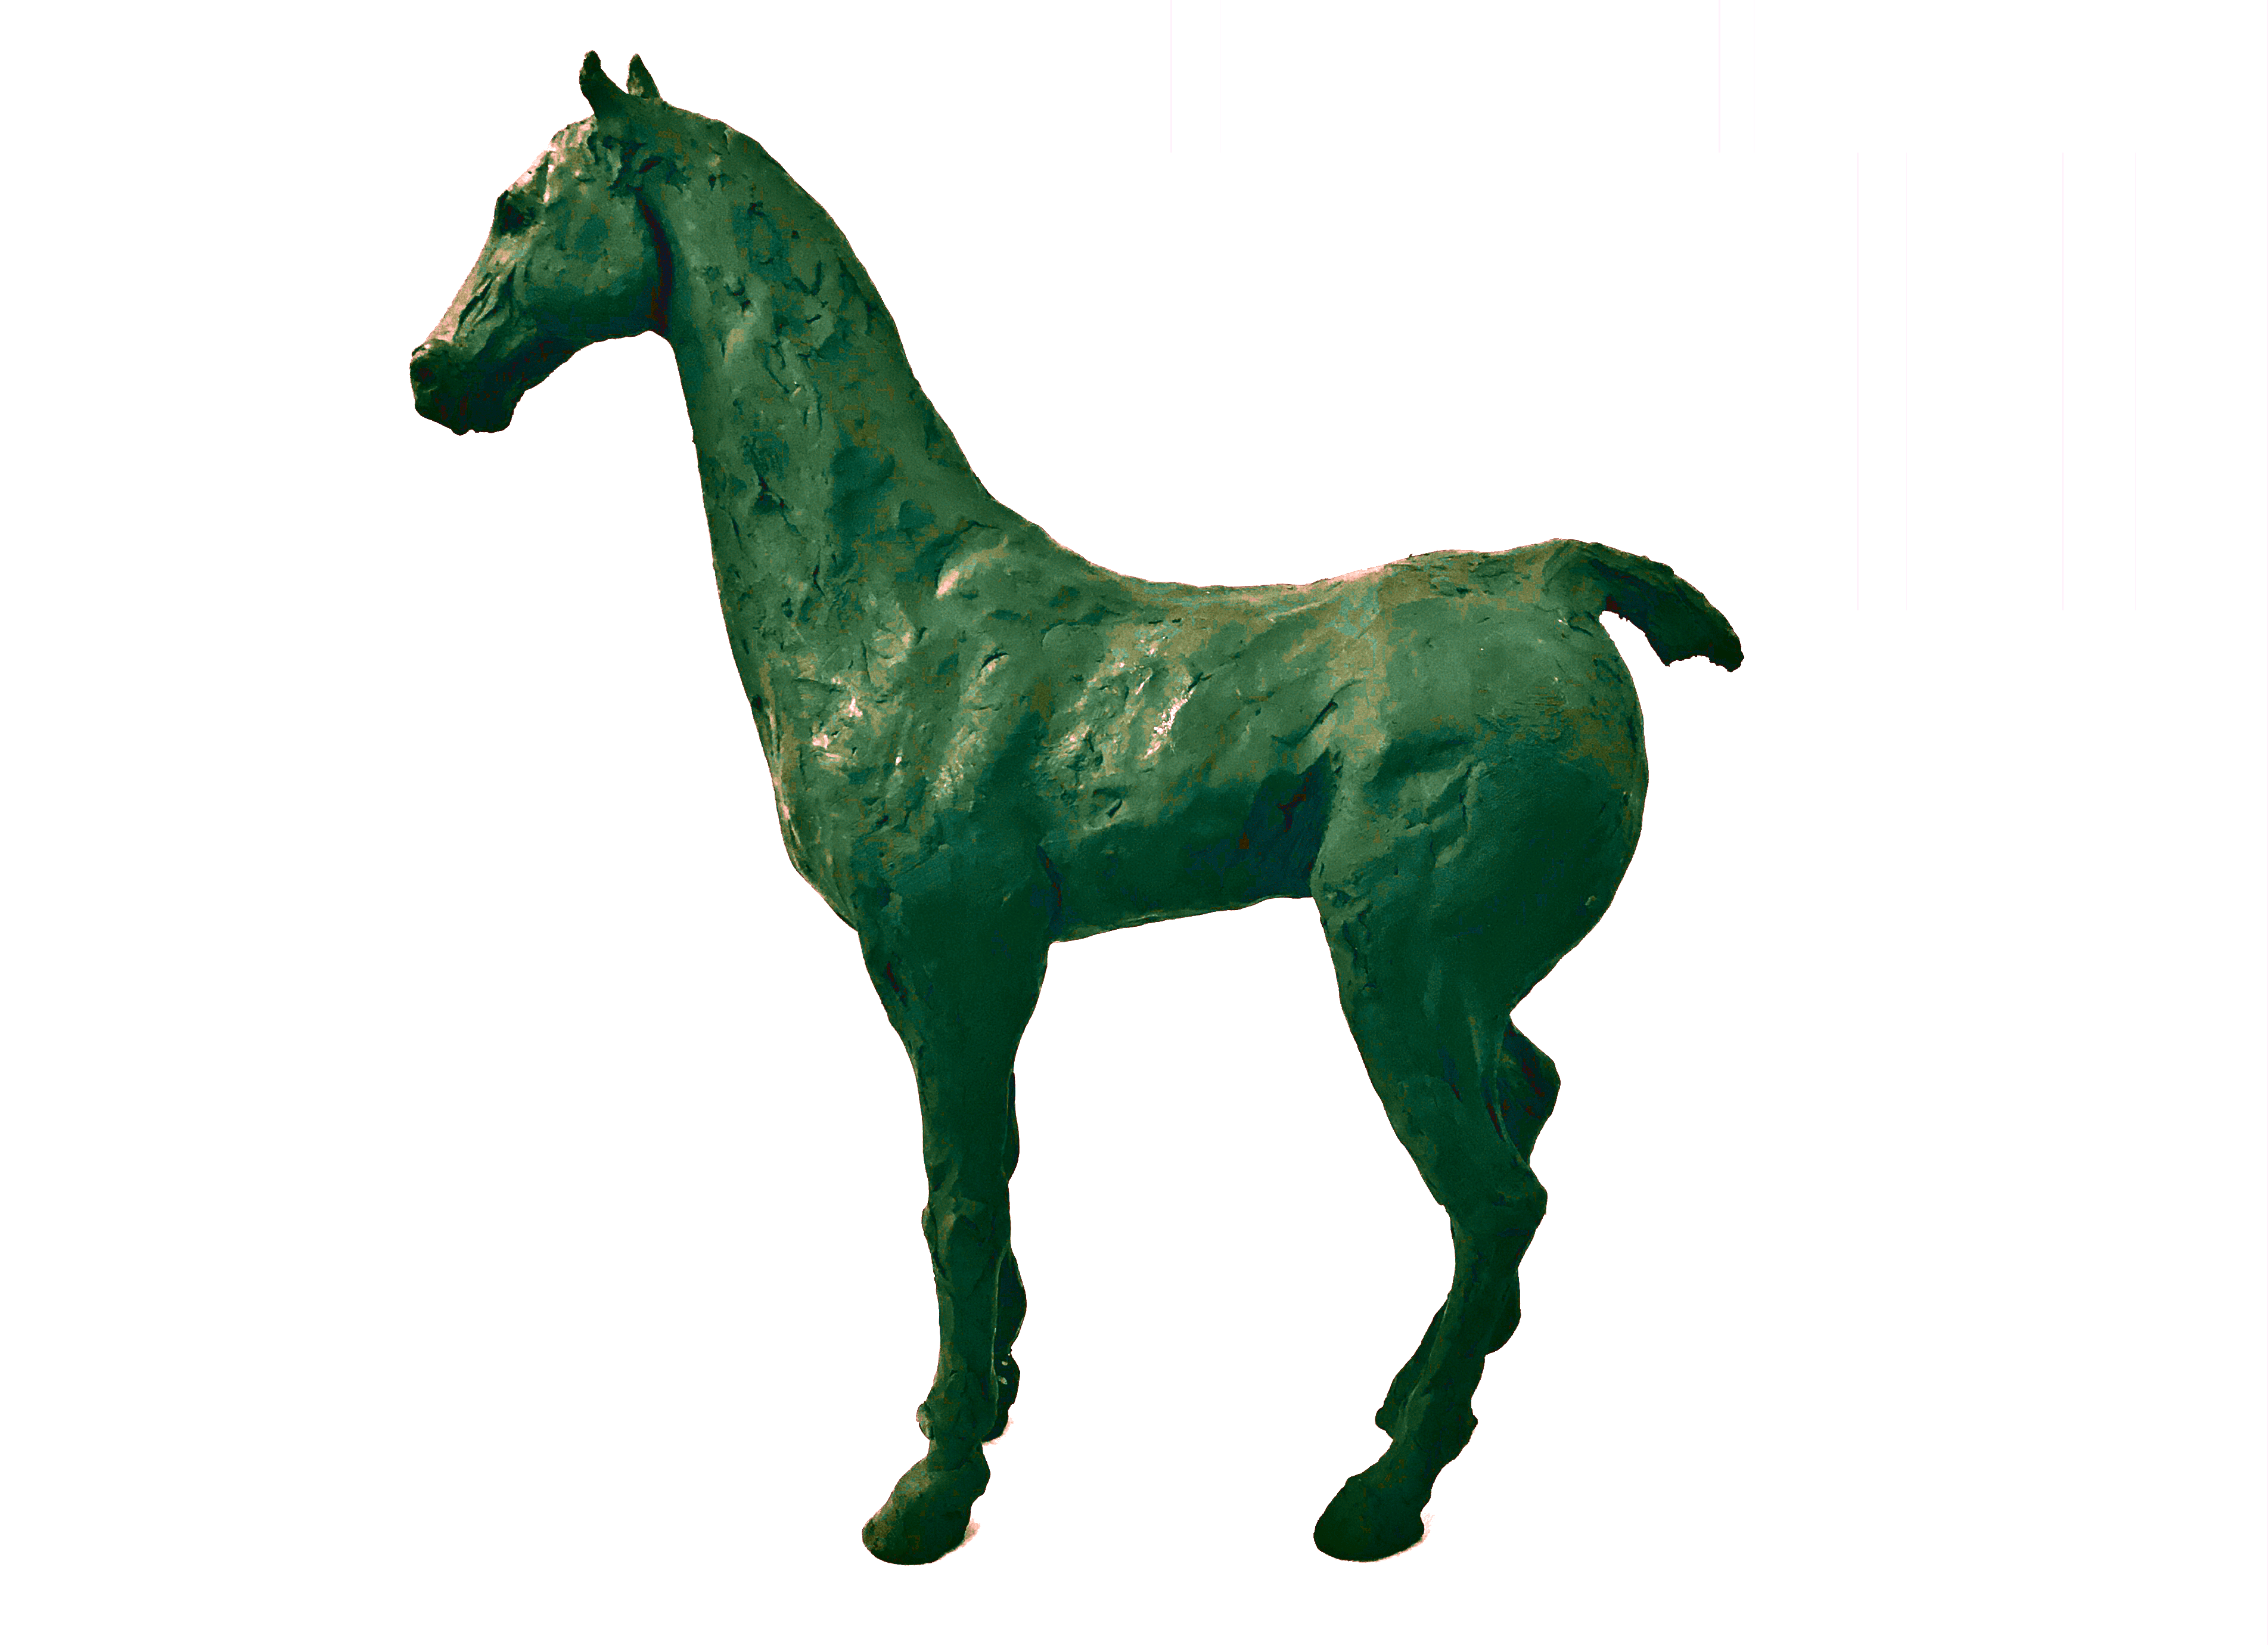 Onyx Horse